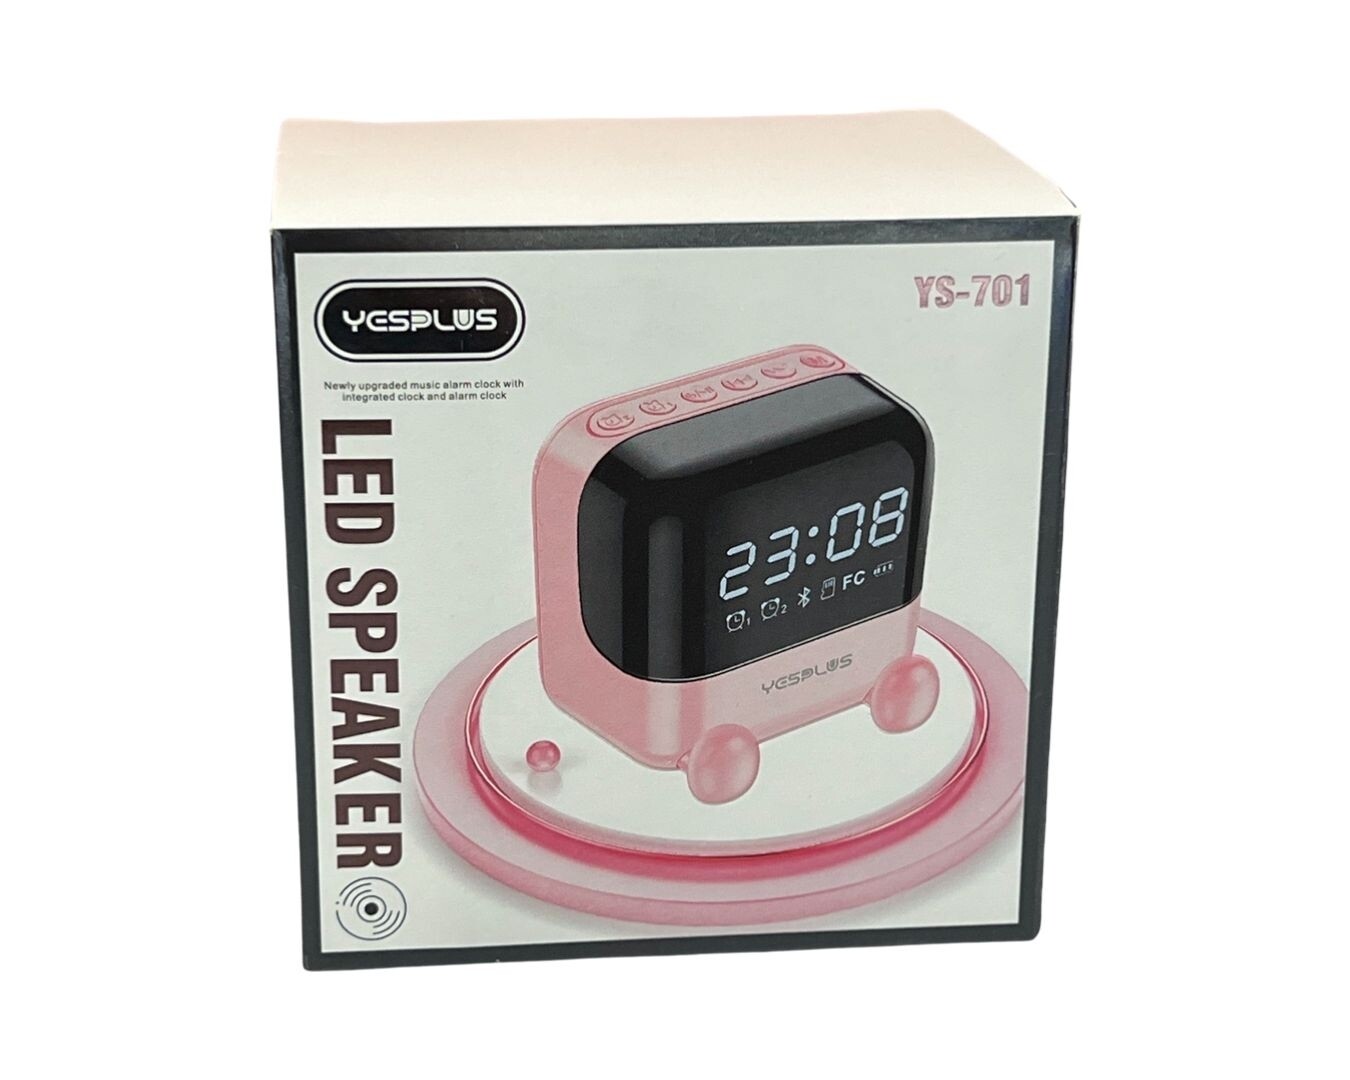 Led clock Bluetooth speaker